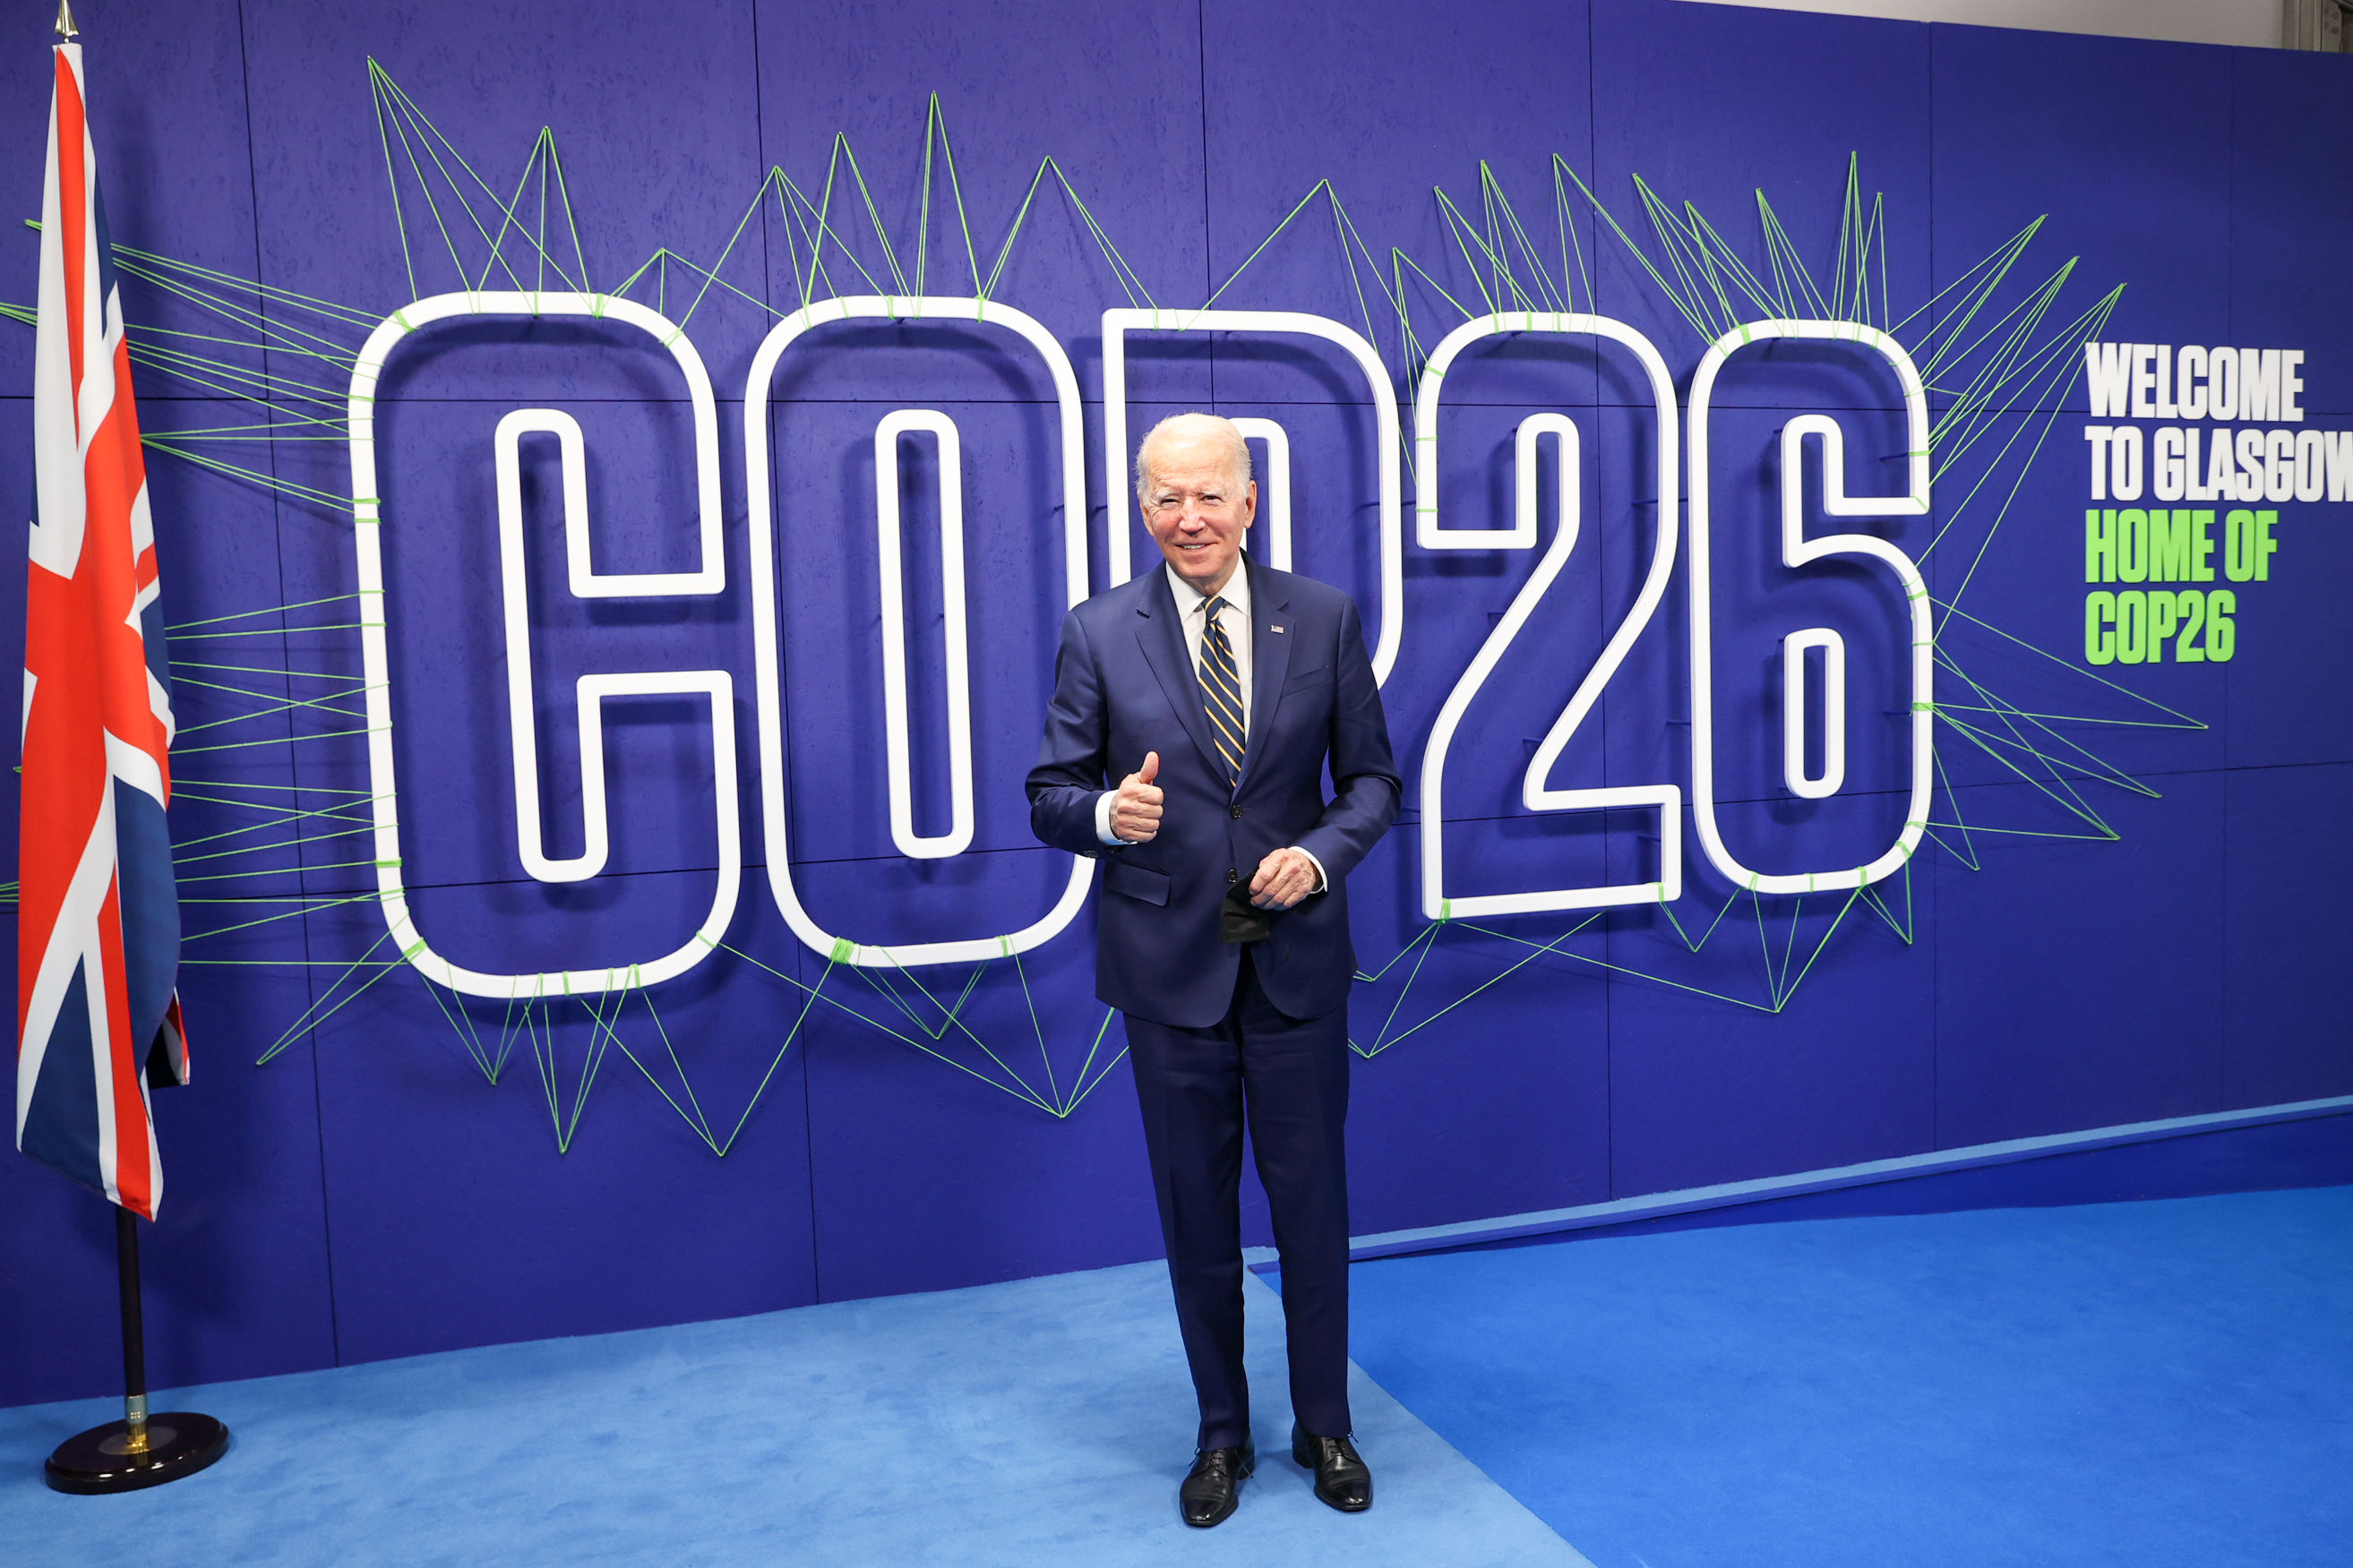 الرئيس الأمريكي جو بايدن يصل إلى قمة قادة العالم COP26 لمؤتمر الأمم المتحدة السادس والعشرين لتغير المناخ في لجنة الأوراق المالية والبورصات